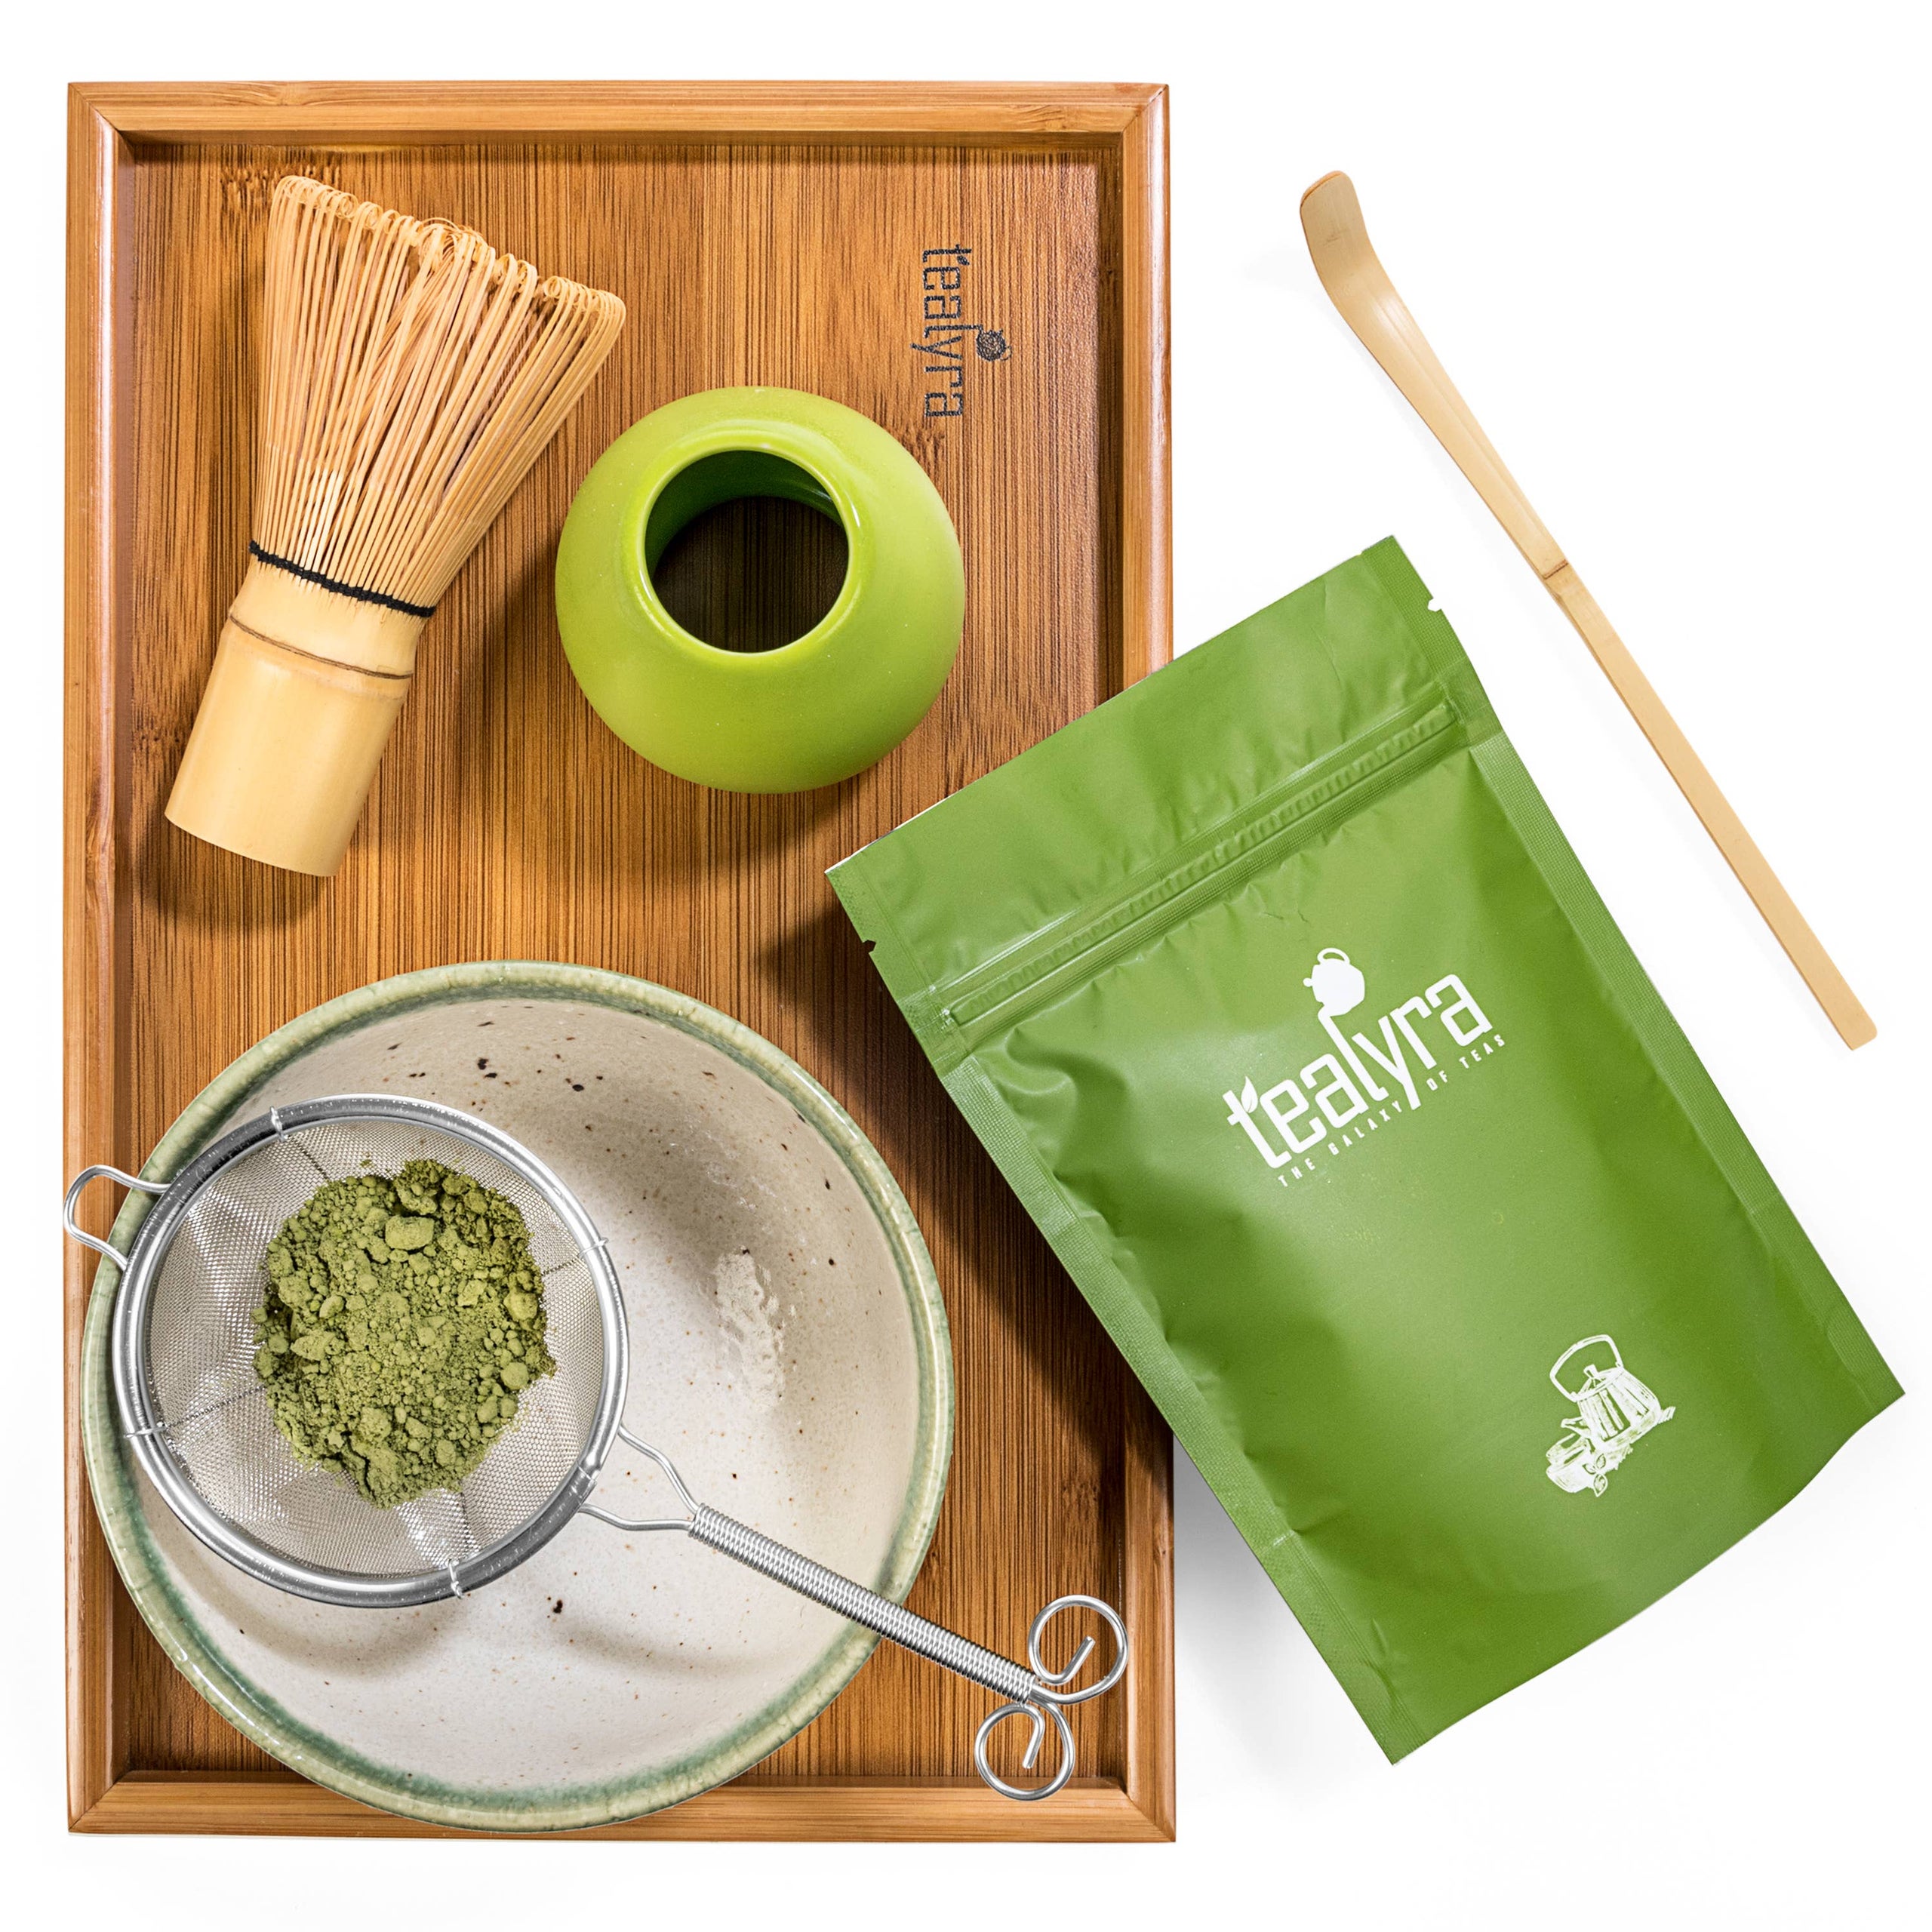 Tealyra - Matcha - Start Up Kit - Matcha Green Tea Gift Set - Japanese Made  Bowl - Bamboo Whisk and Scoop - Gift Box (Green)